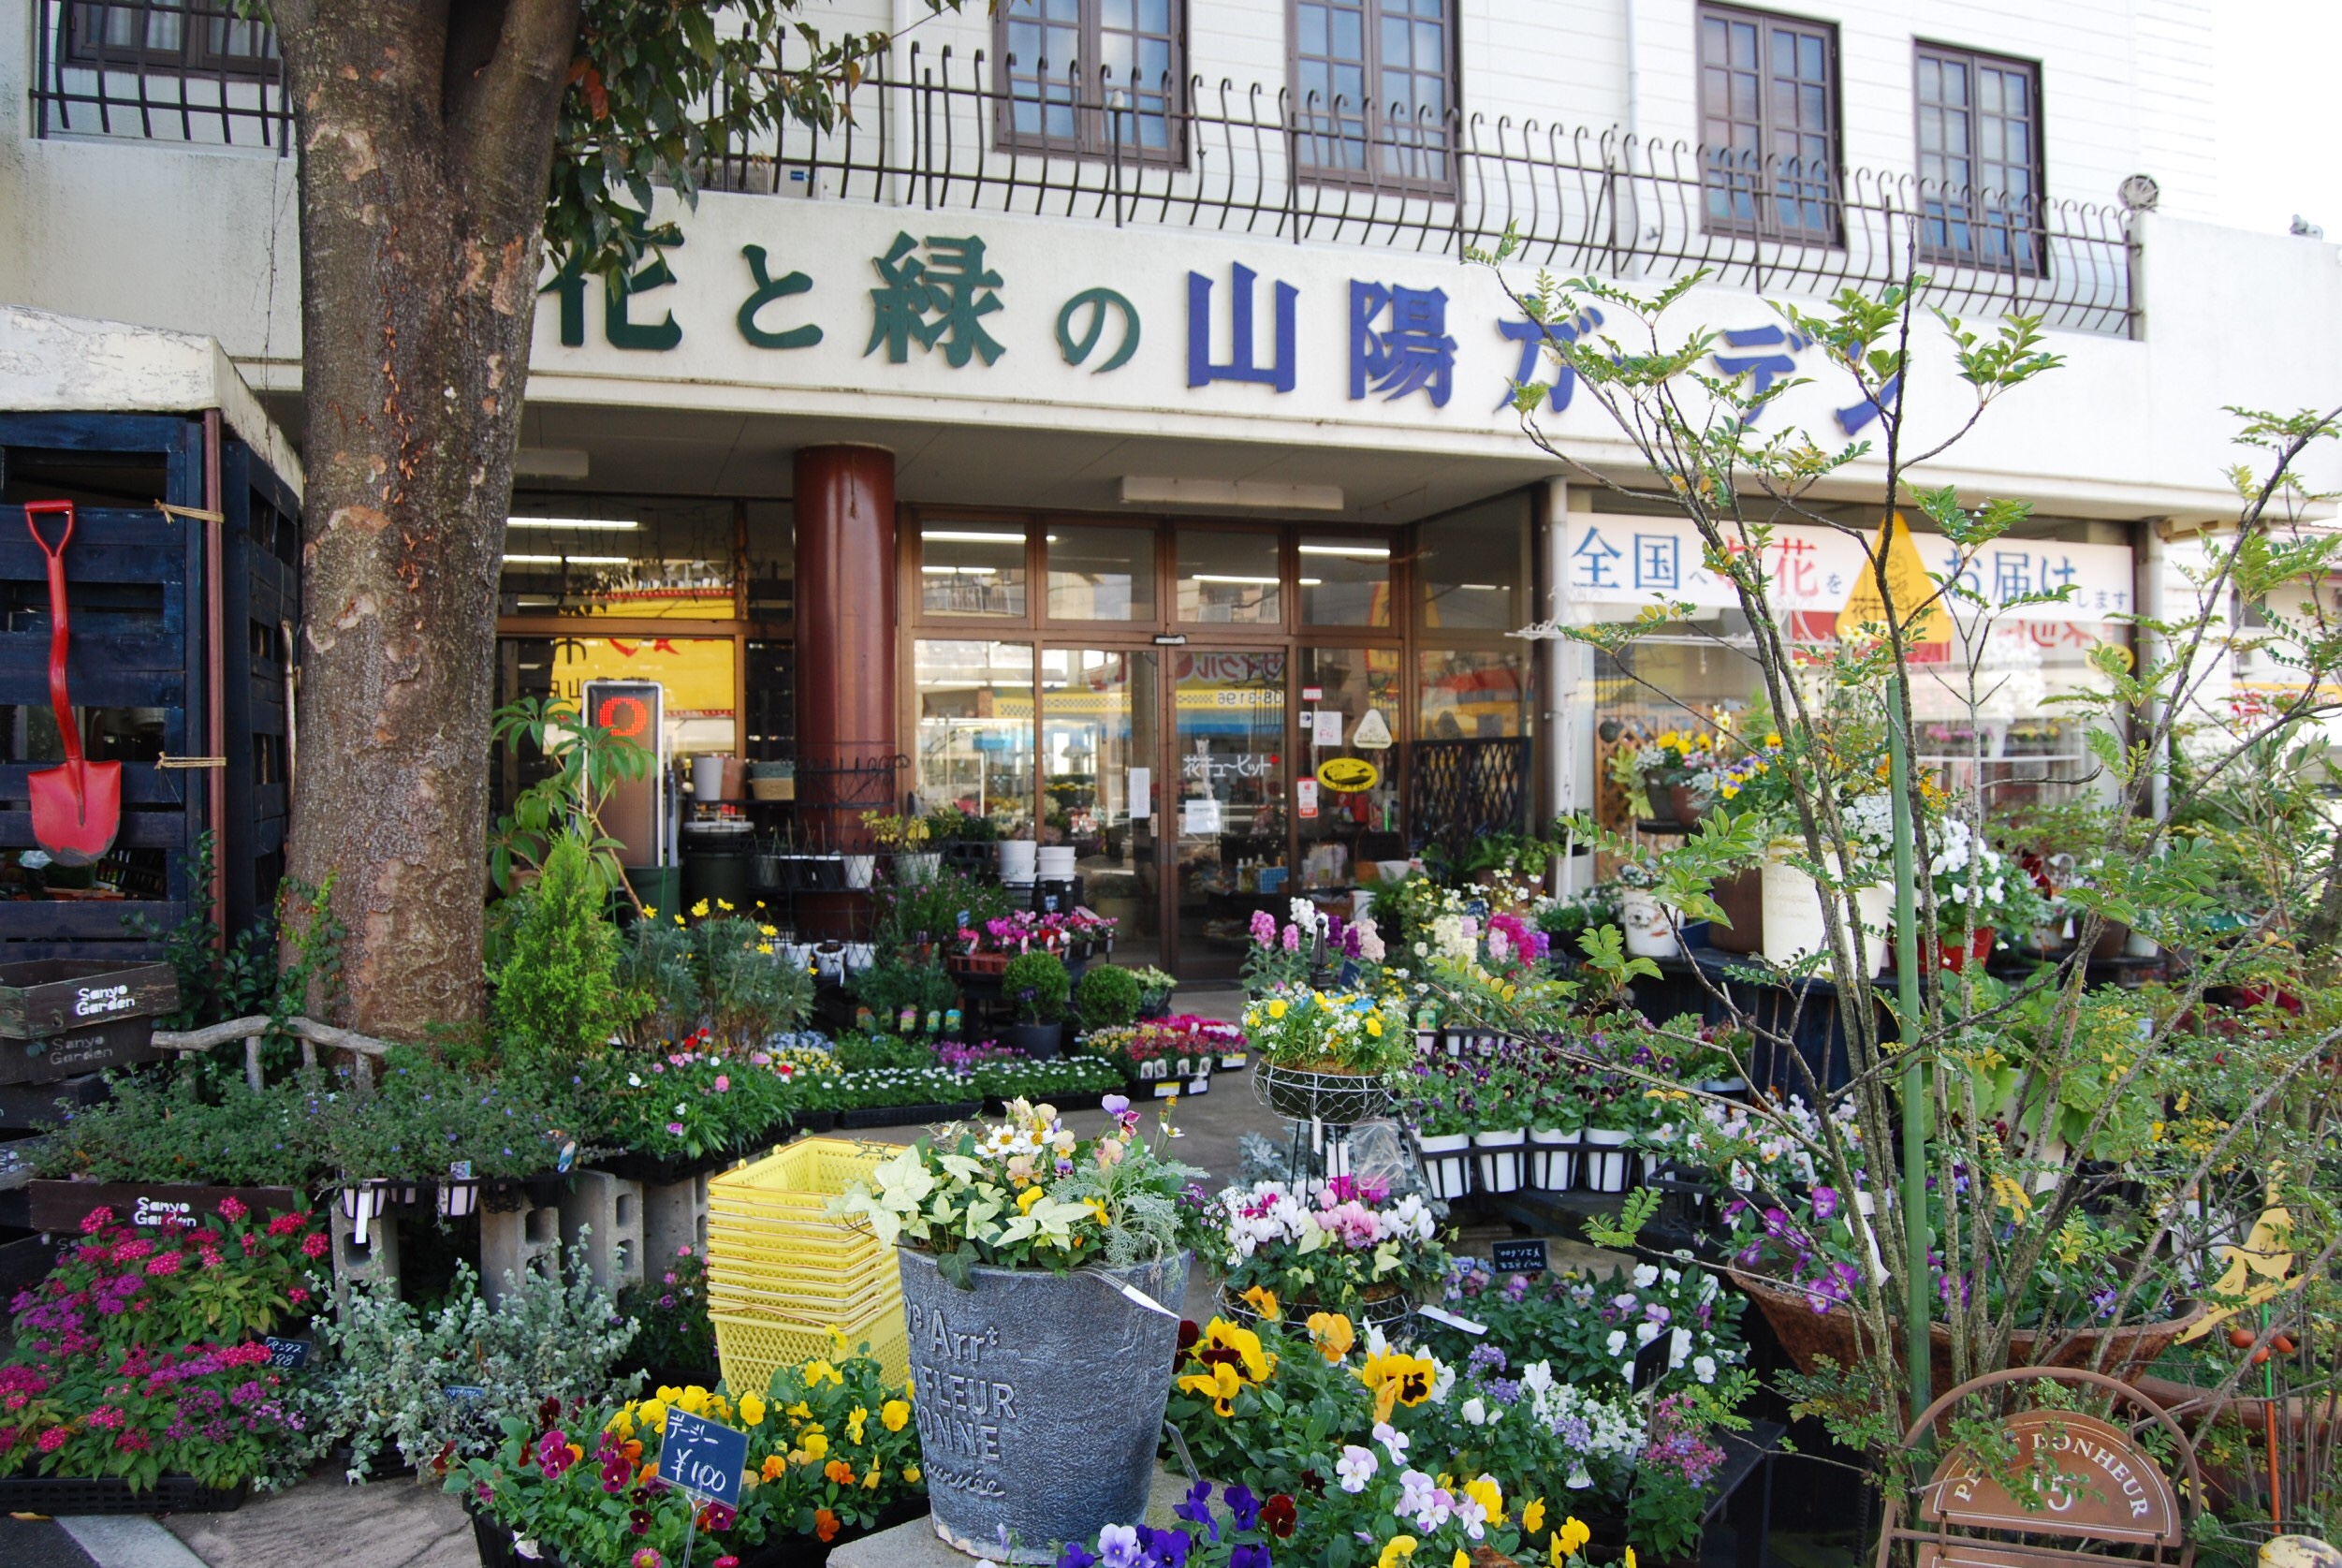 今行っておきたい 岡山の素敵なお花屋さんを紹介 花と緑の山陽ガーデンヽ 0 ノオシャレな雑貨も 桃の木